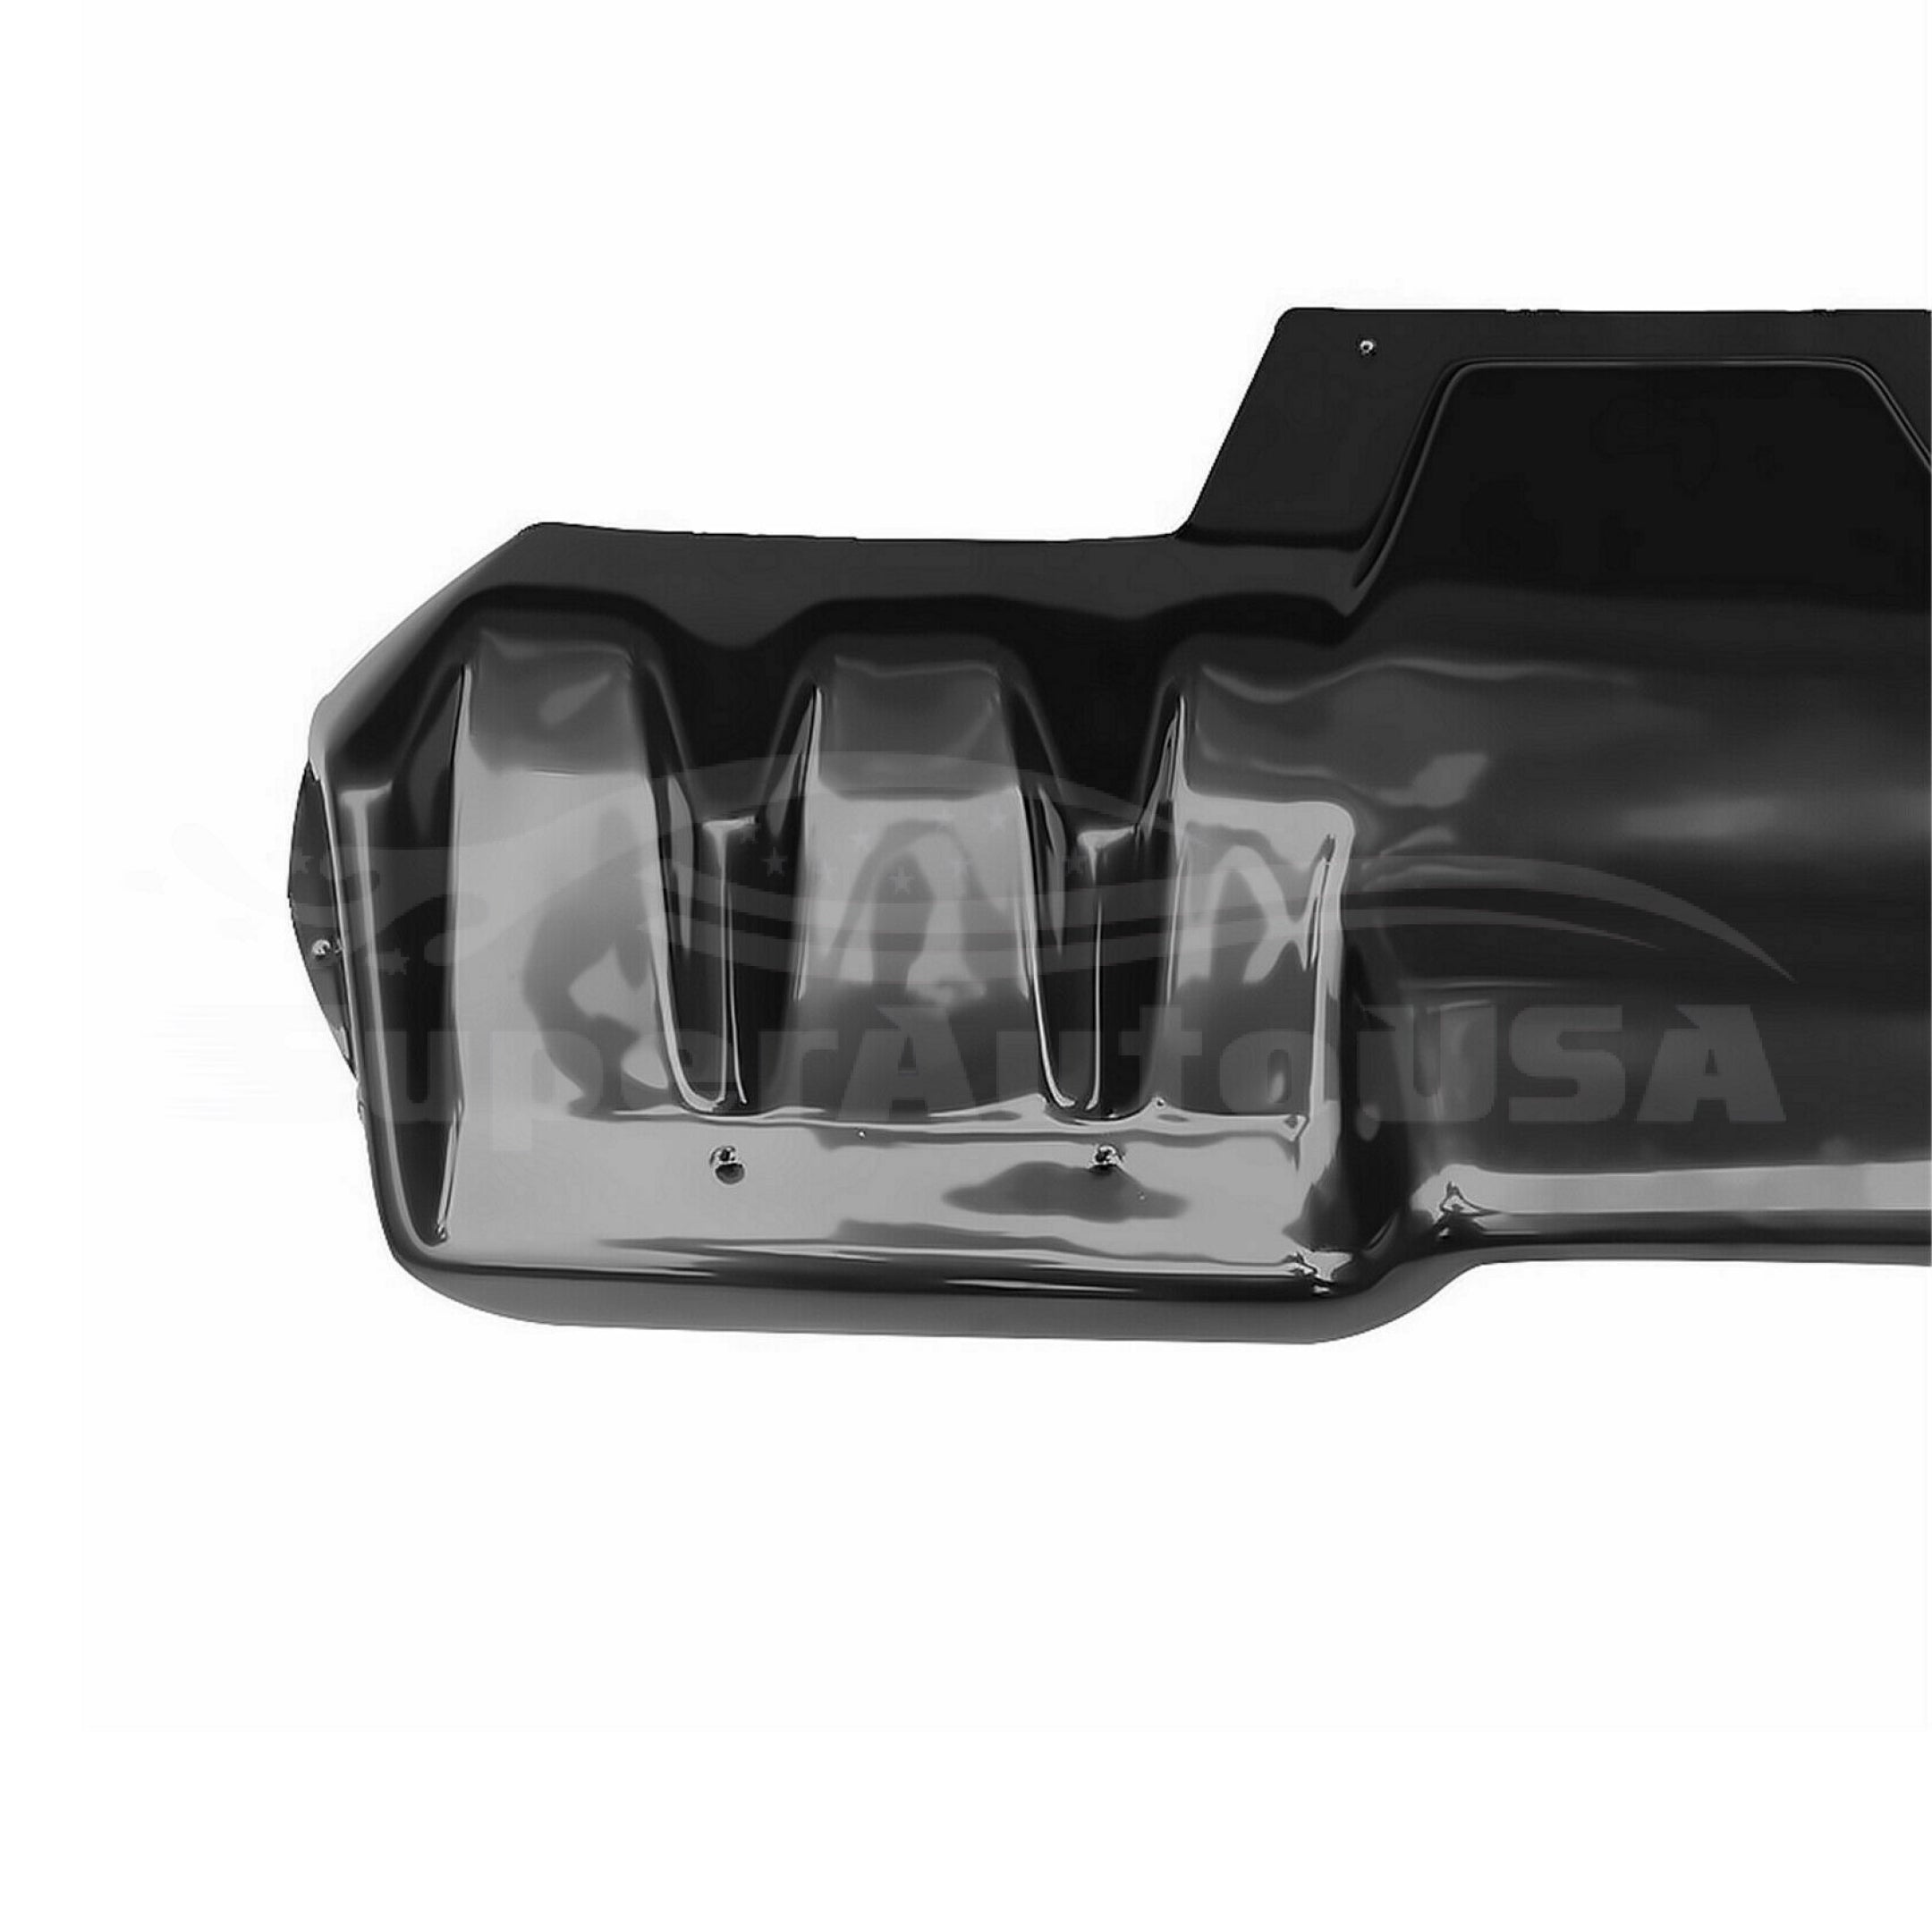 Fits 2015-2021 Subaru Impreza WRX STI Black Rear Bumper Lip Diffuser